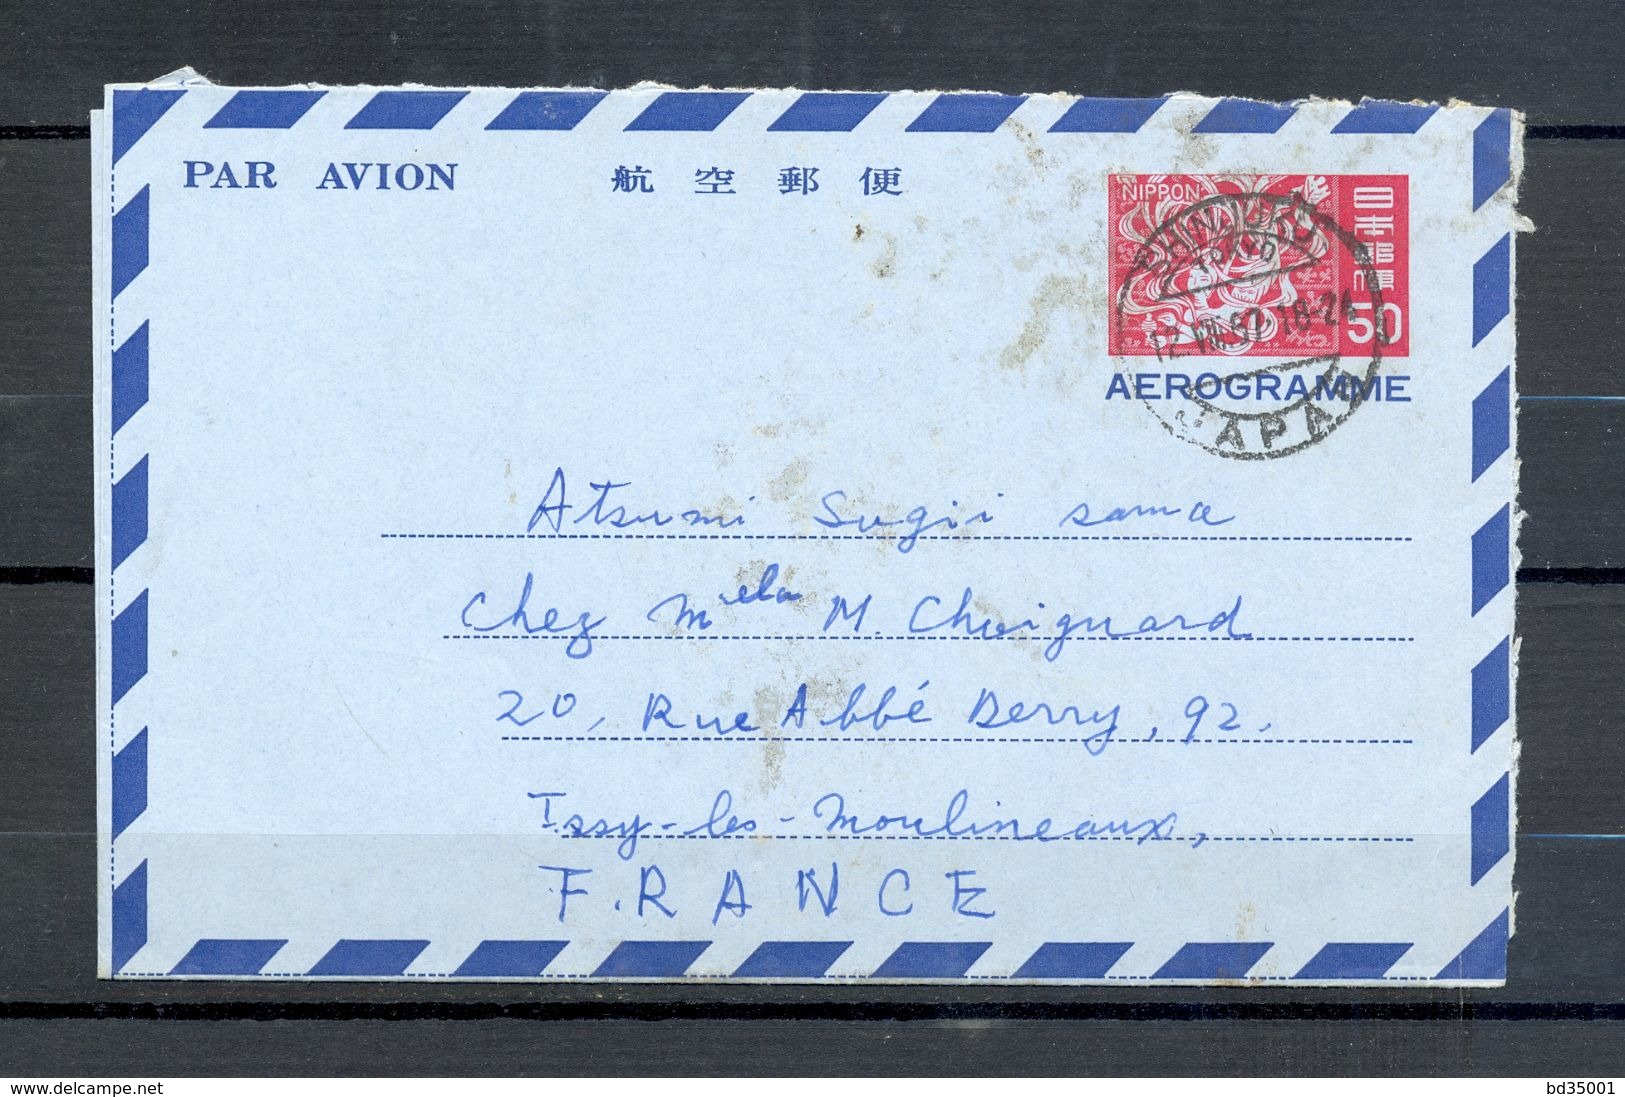 AEROGRAMME AIR LETTER PAR AVION - JAPON JAPAN - Tokyo Vers Issy Les Moulineaux - 1967 - (5) - Aerogramme